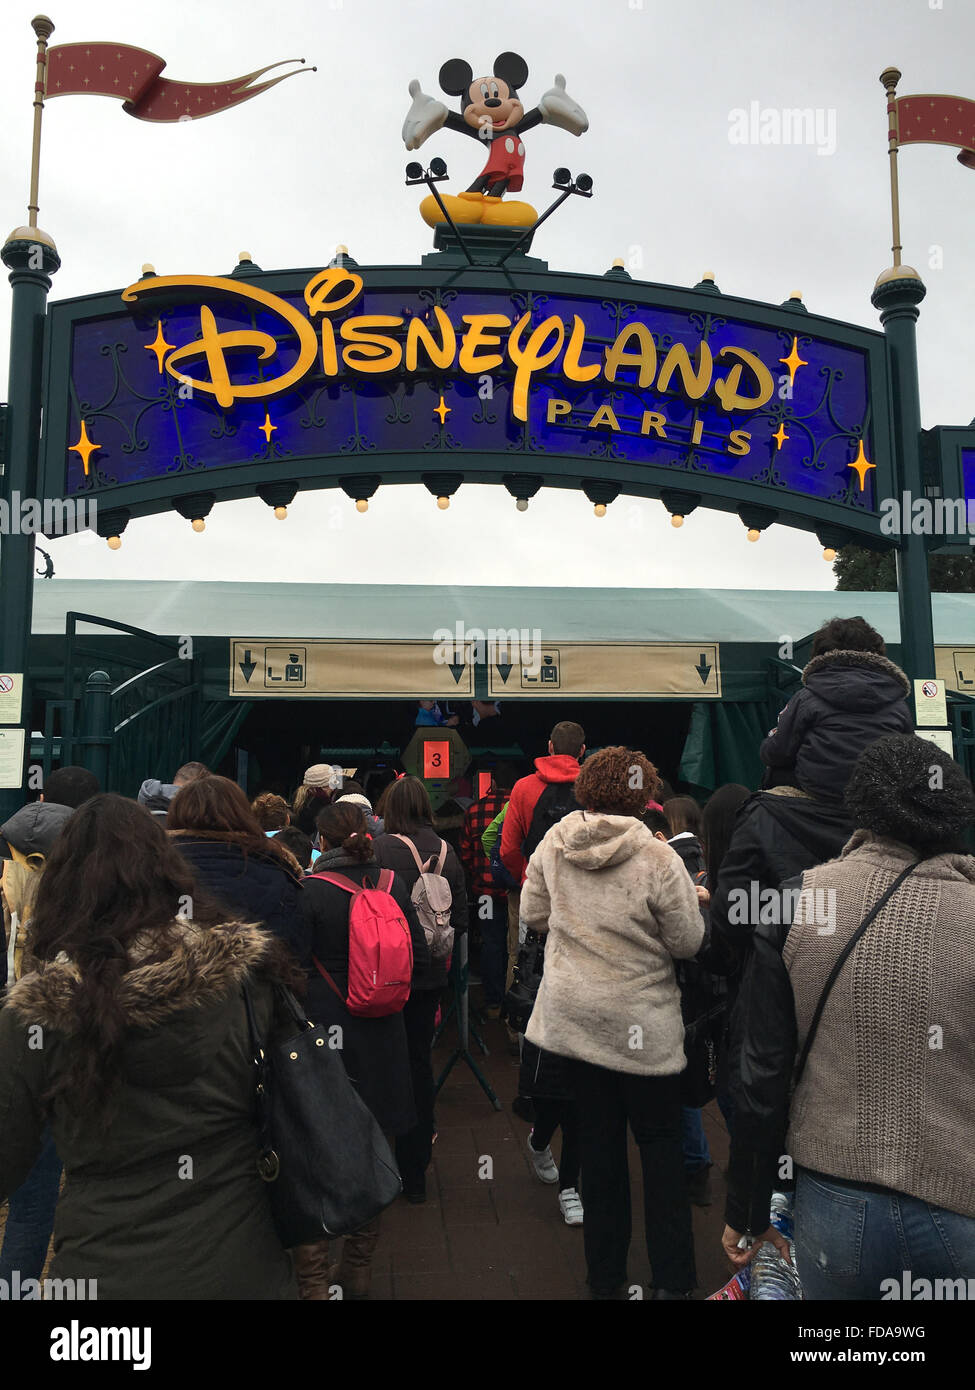 Besucher in Disneyland Paris-Warteschlange auf ihre Taschen am Eingang gescannt haben. Bild: Scott Bairstow/Alamy Stockfoto